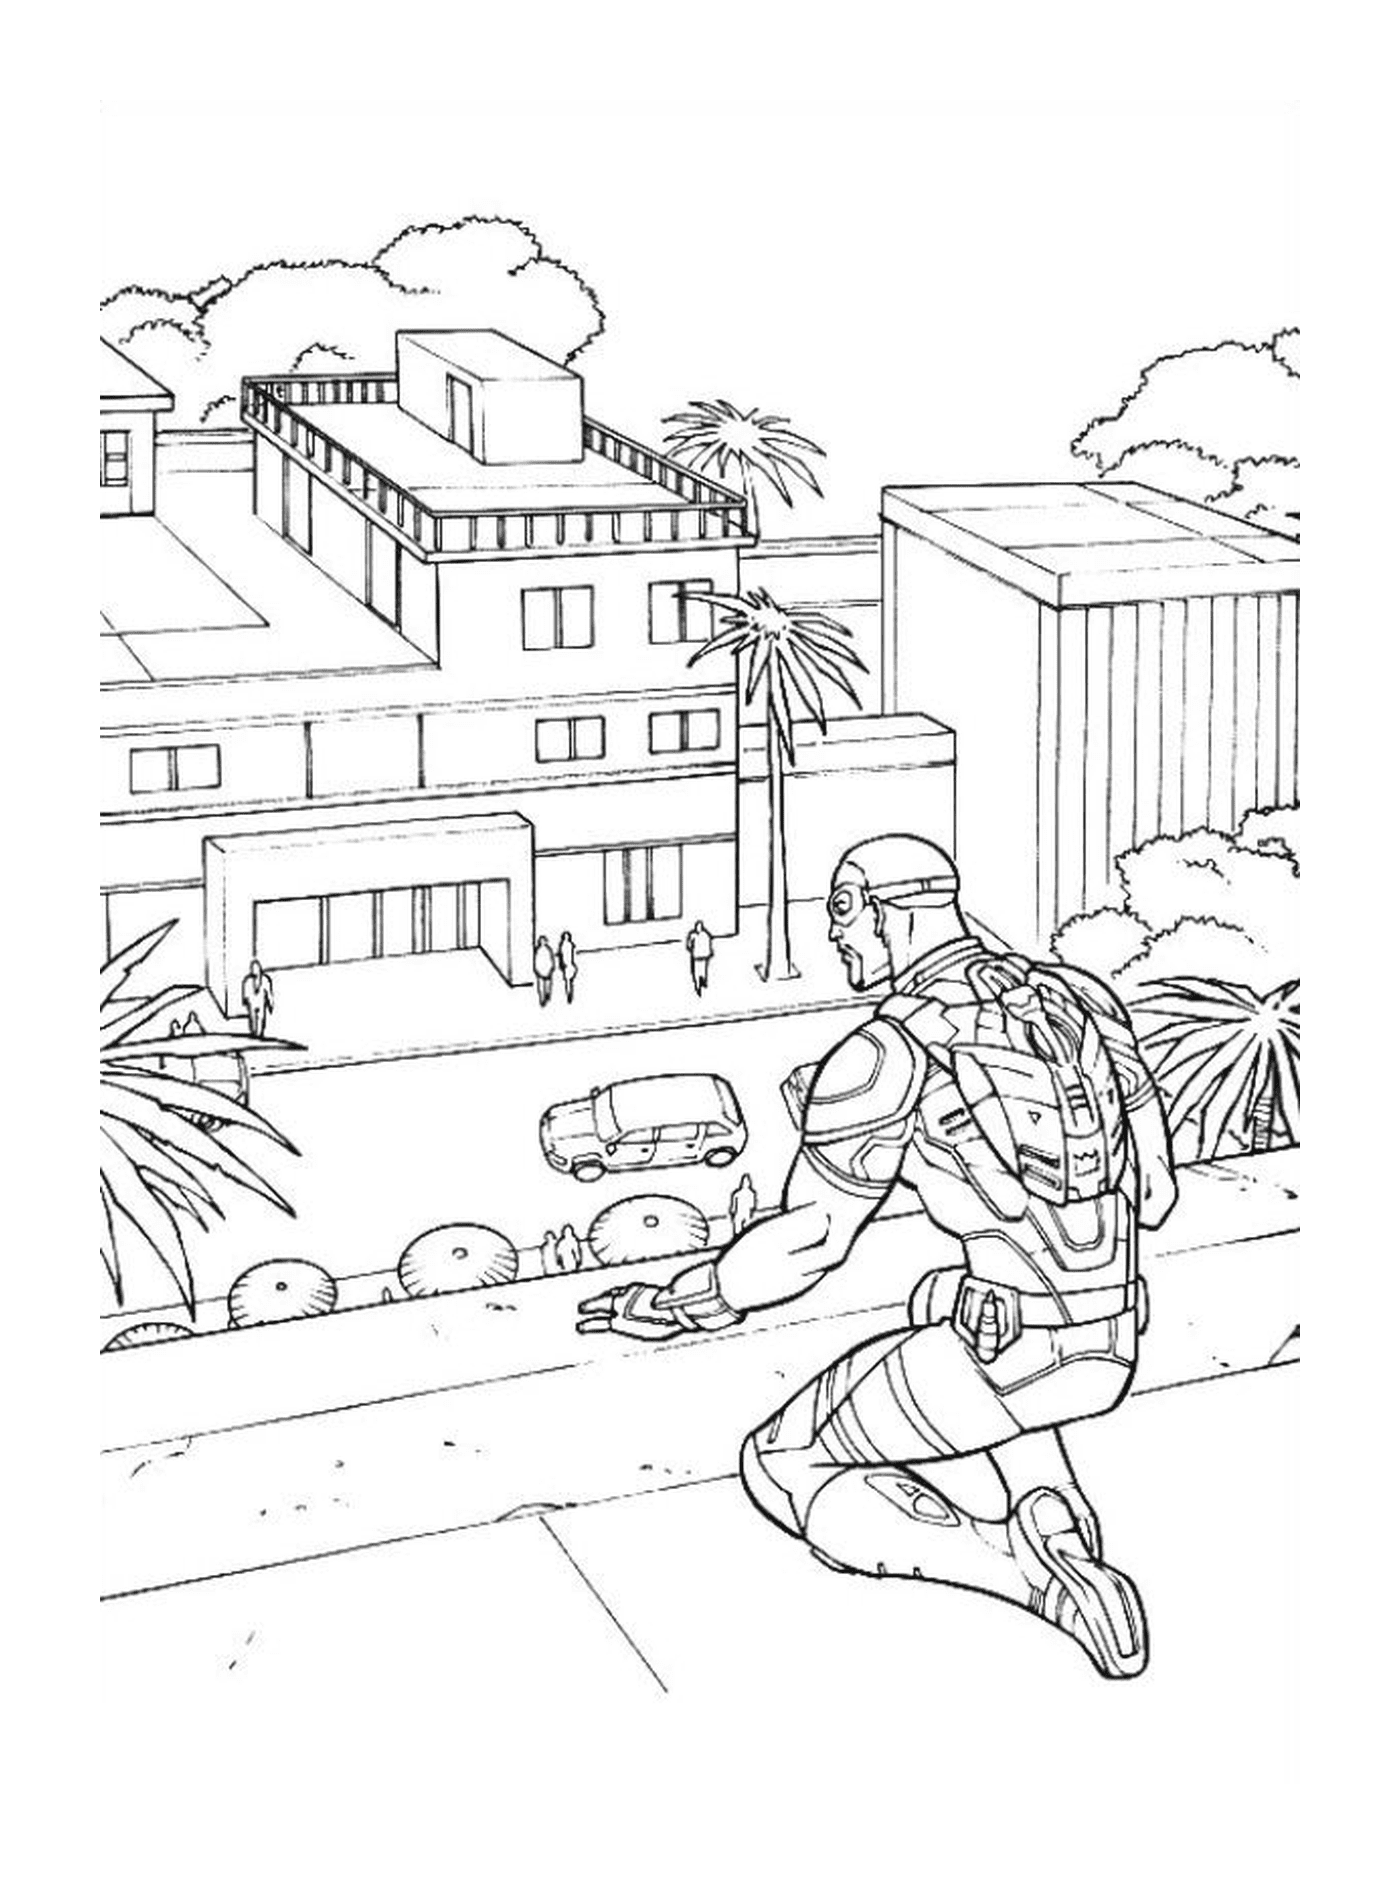  un hombre en una calle (imagen no relacionada con el Capitán América) 